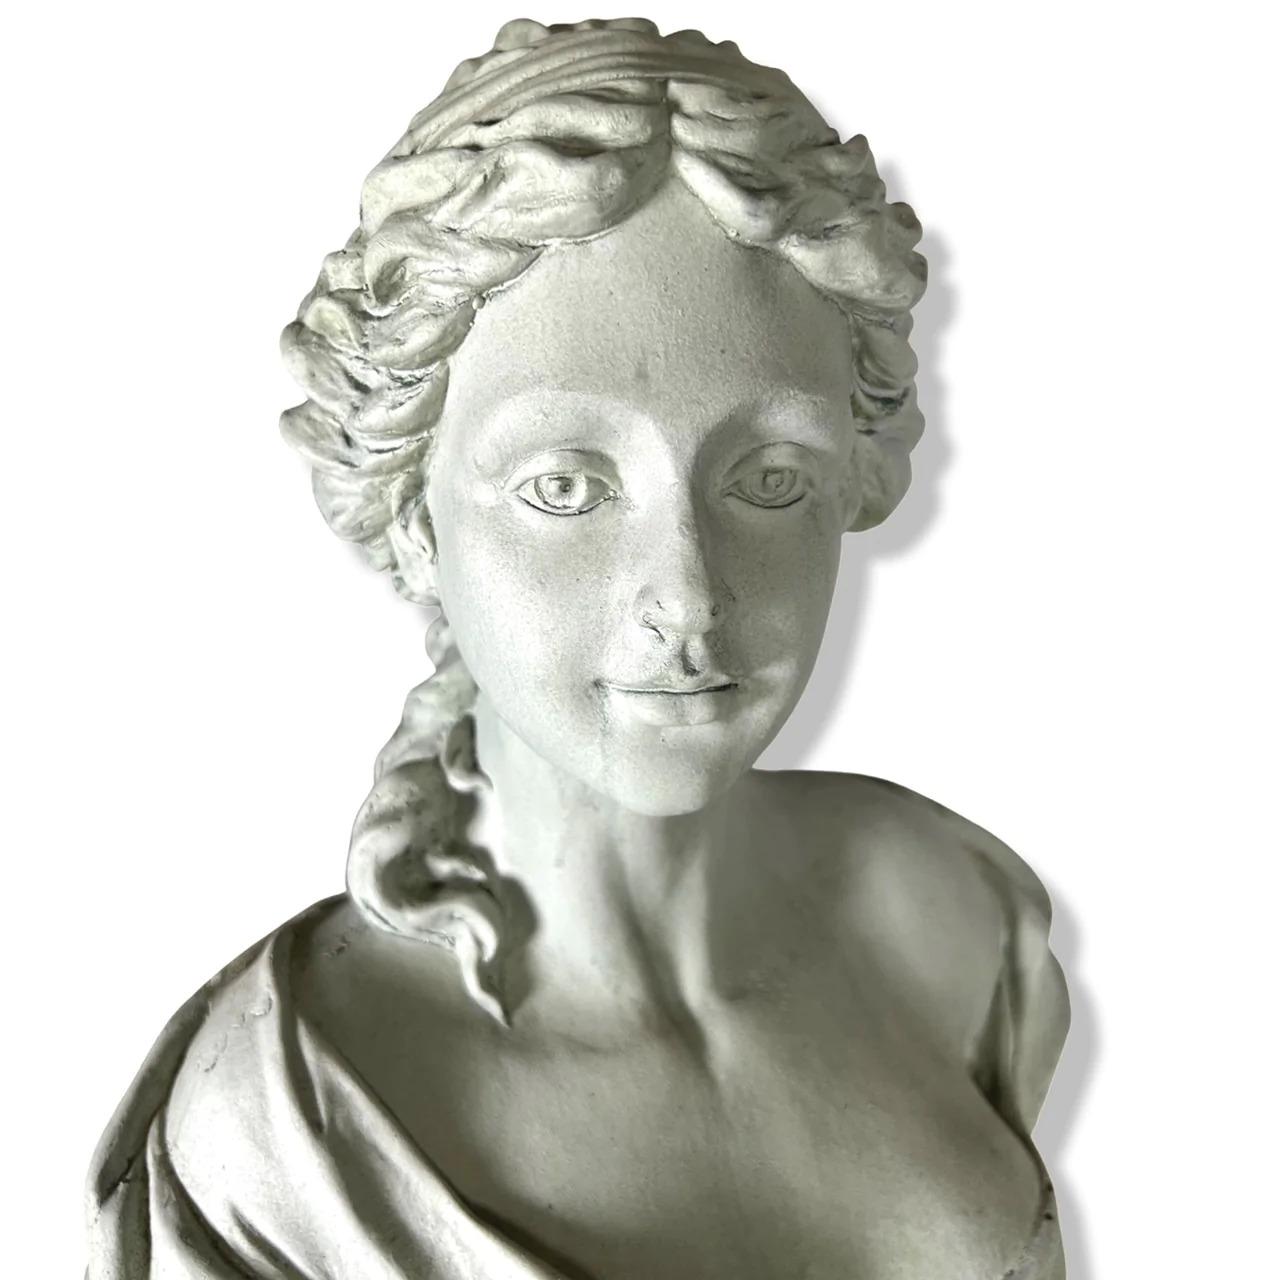 Cet élégant buste de style Antoinette est fabriqué en fausse pierre, et est modérément lourd, mais suffisamment fonctionnel pour être déplacé et placé avec facilité. Il est brillamment moulé et conviendrait parfaitement à une table de jardin ou à un